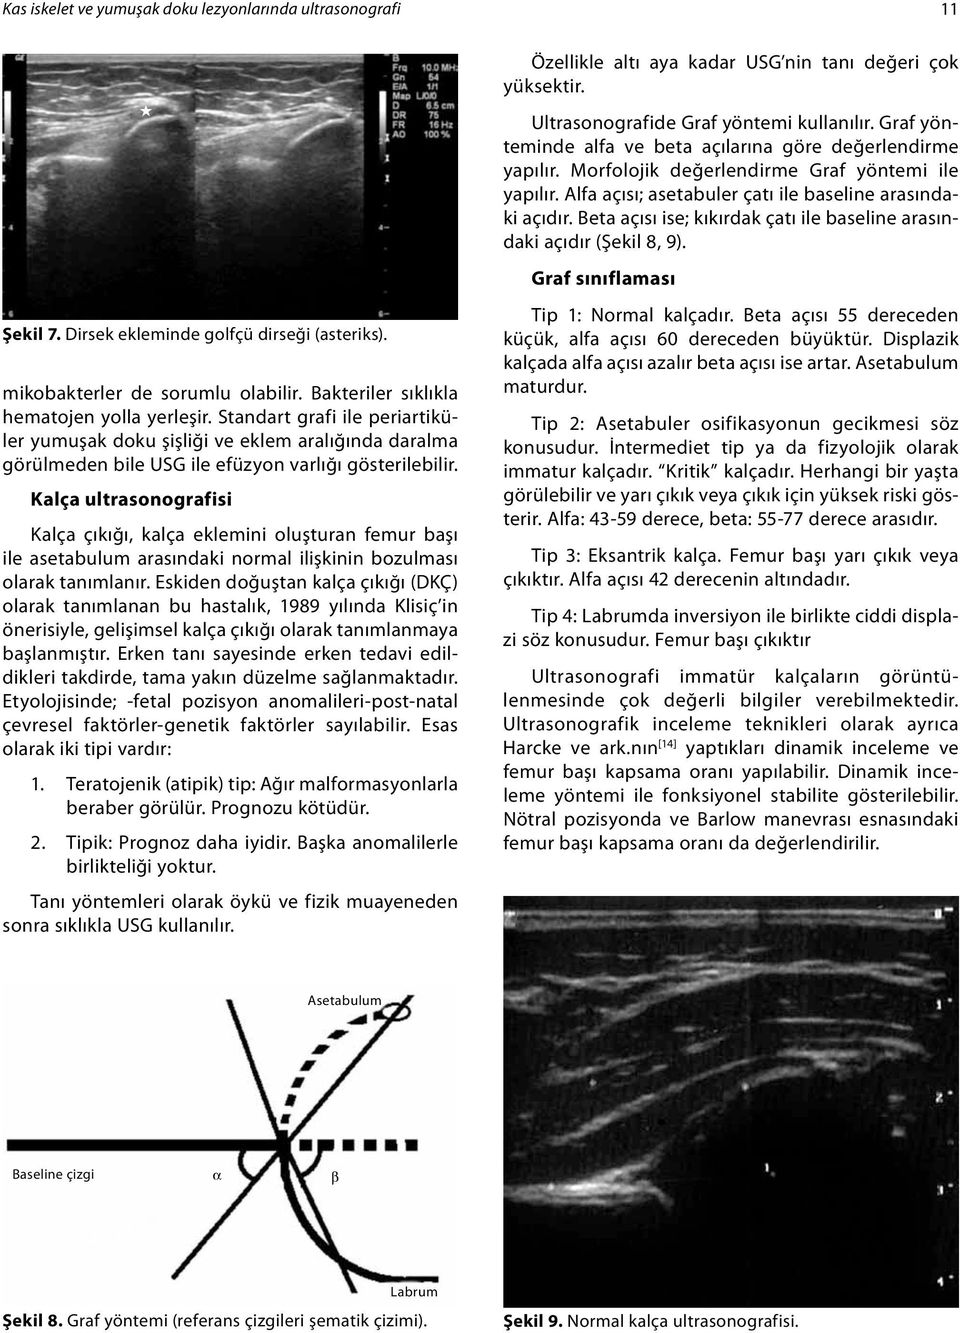 Kalça ultrasonografisi Kalça çıkığı, kalça eklemini oluşturan femur başı ile asetabulum arasındaki normal ilişkinin bozulması olarak tanımlanır.